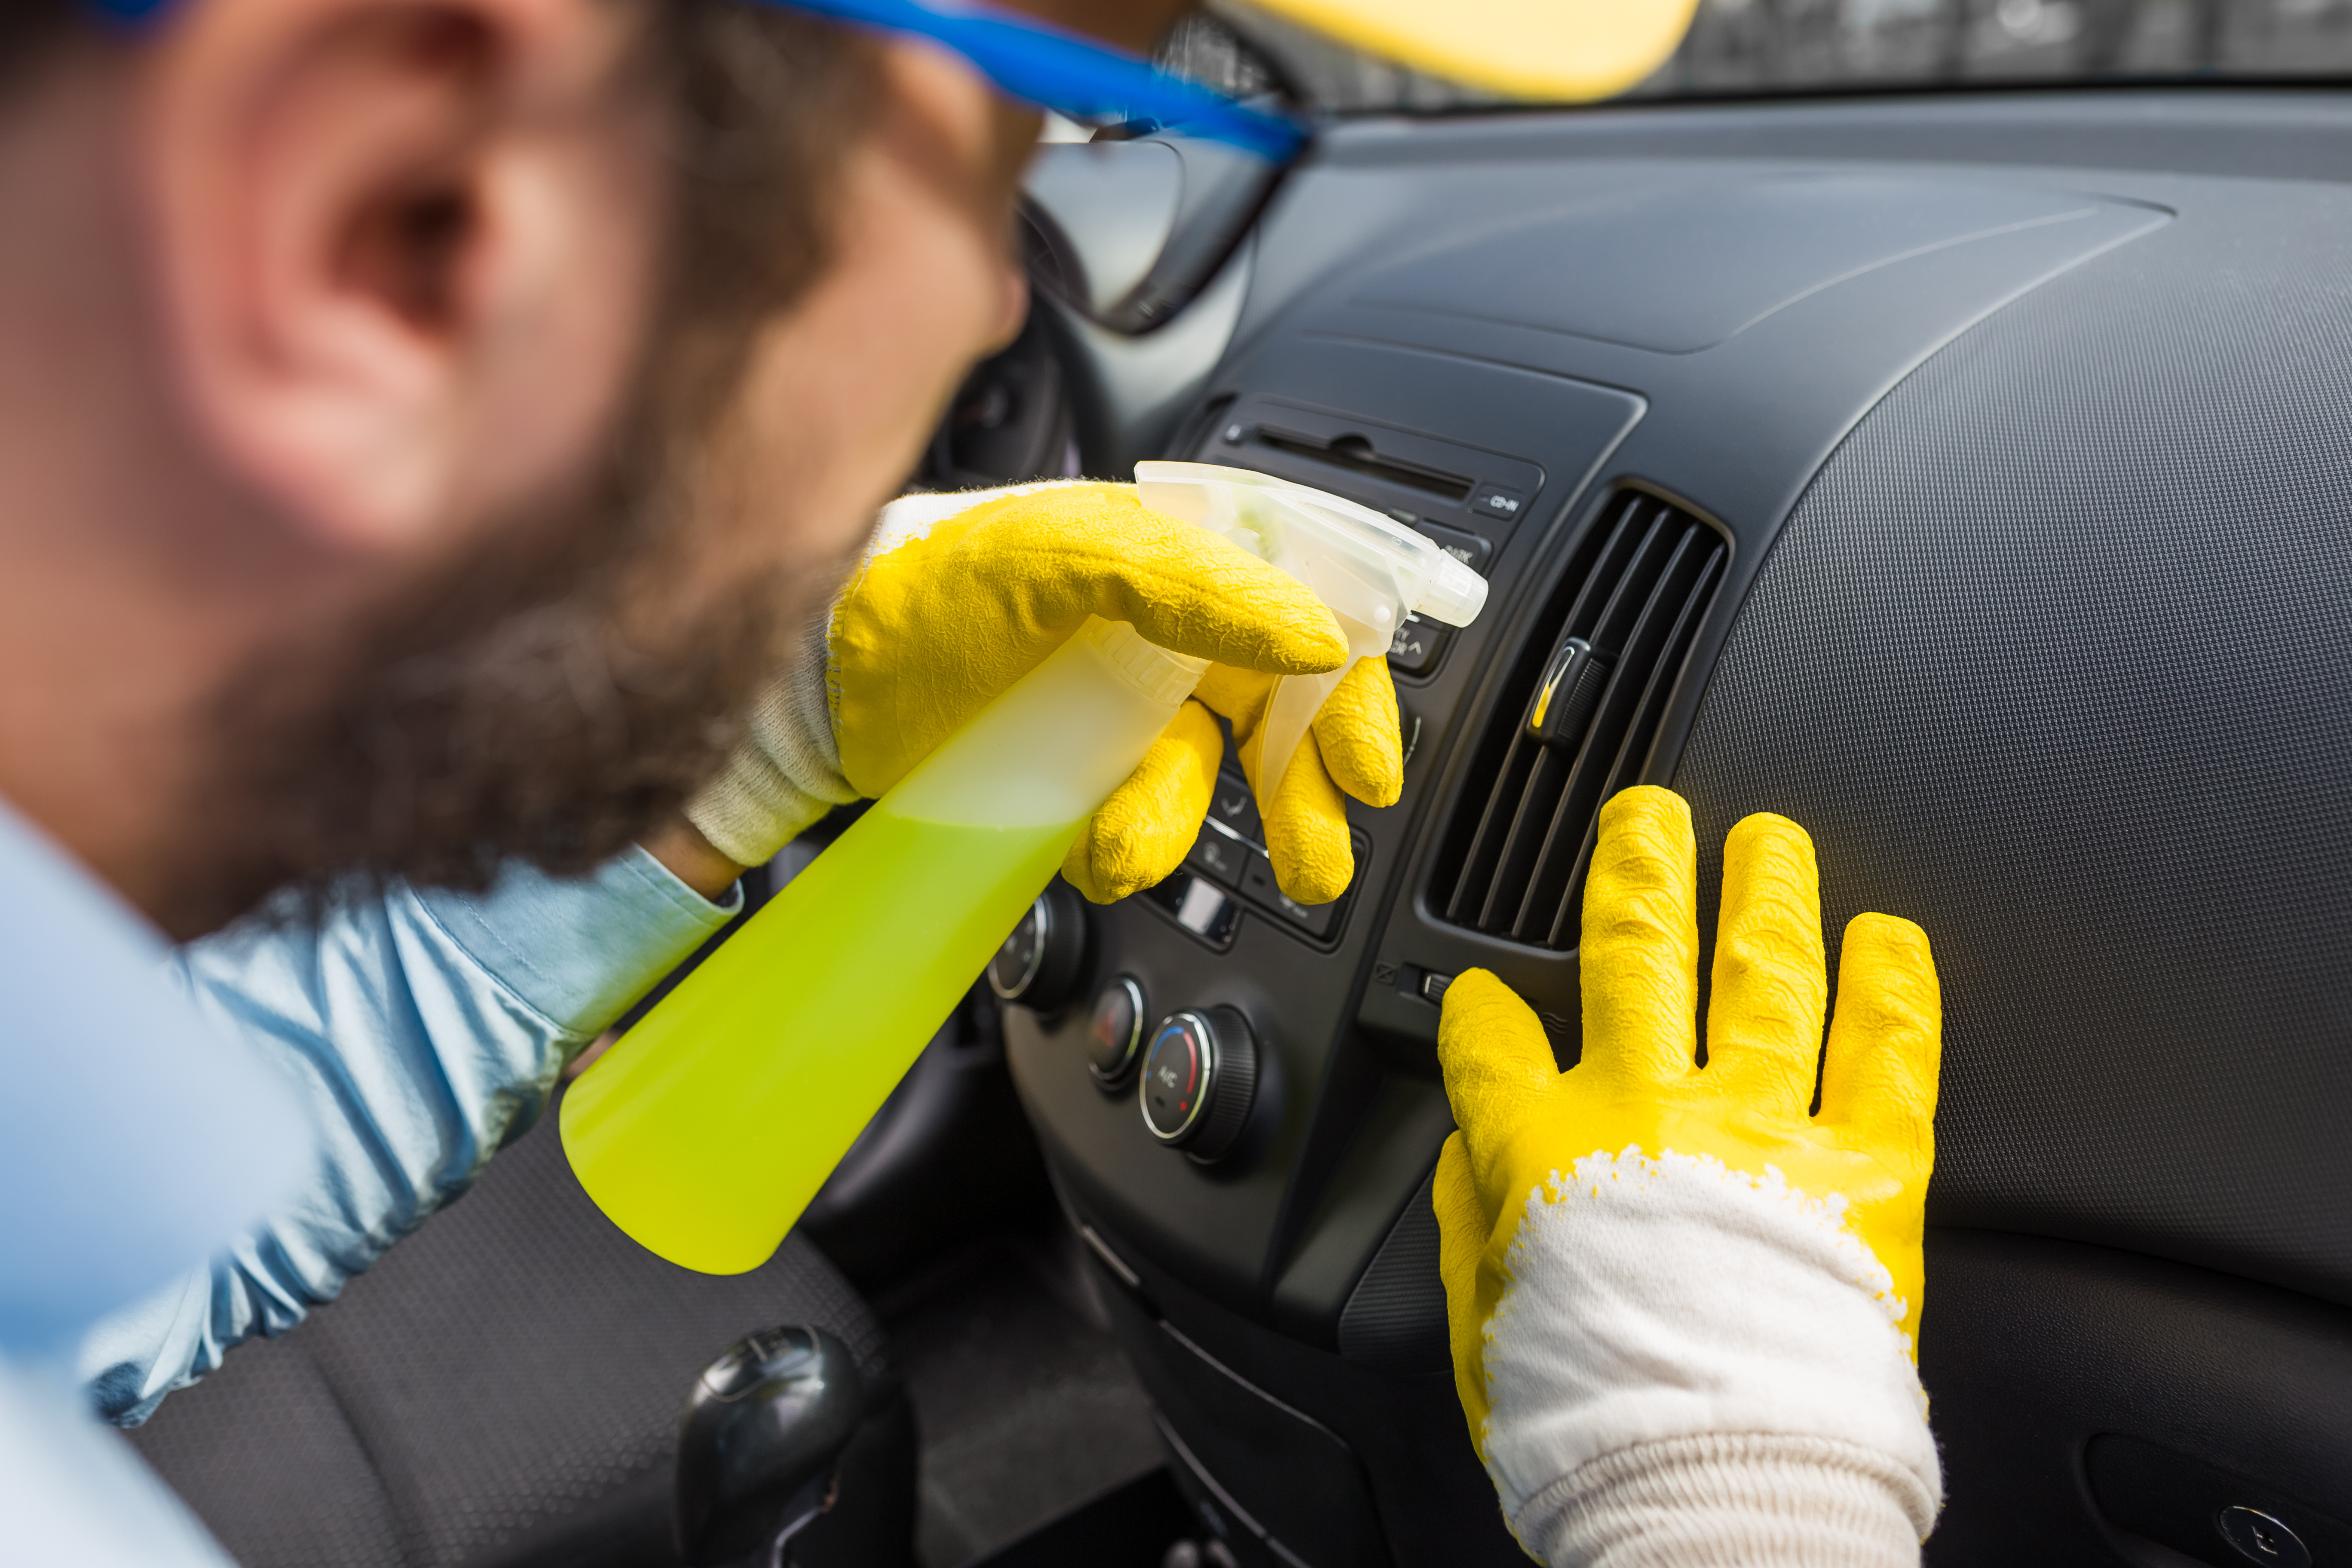 Klimaanlage im Auto: Befüllen, warten, desinfizieren